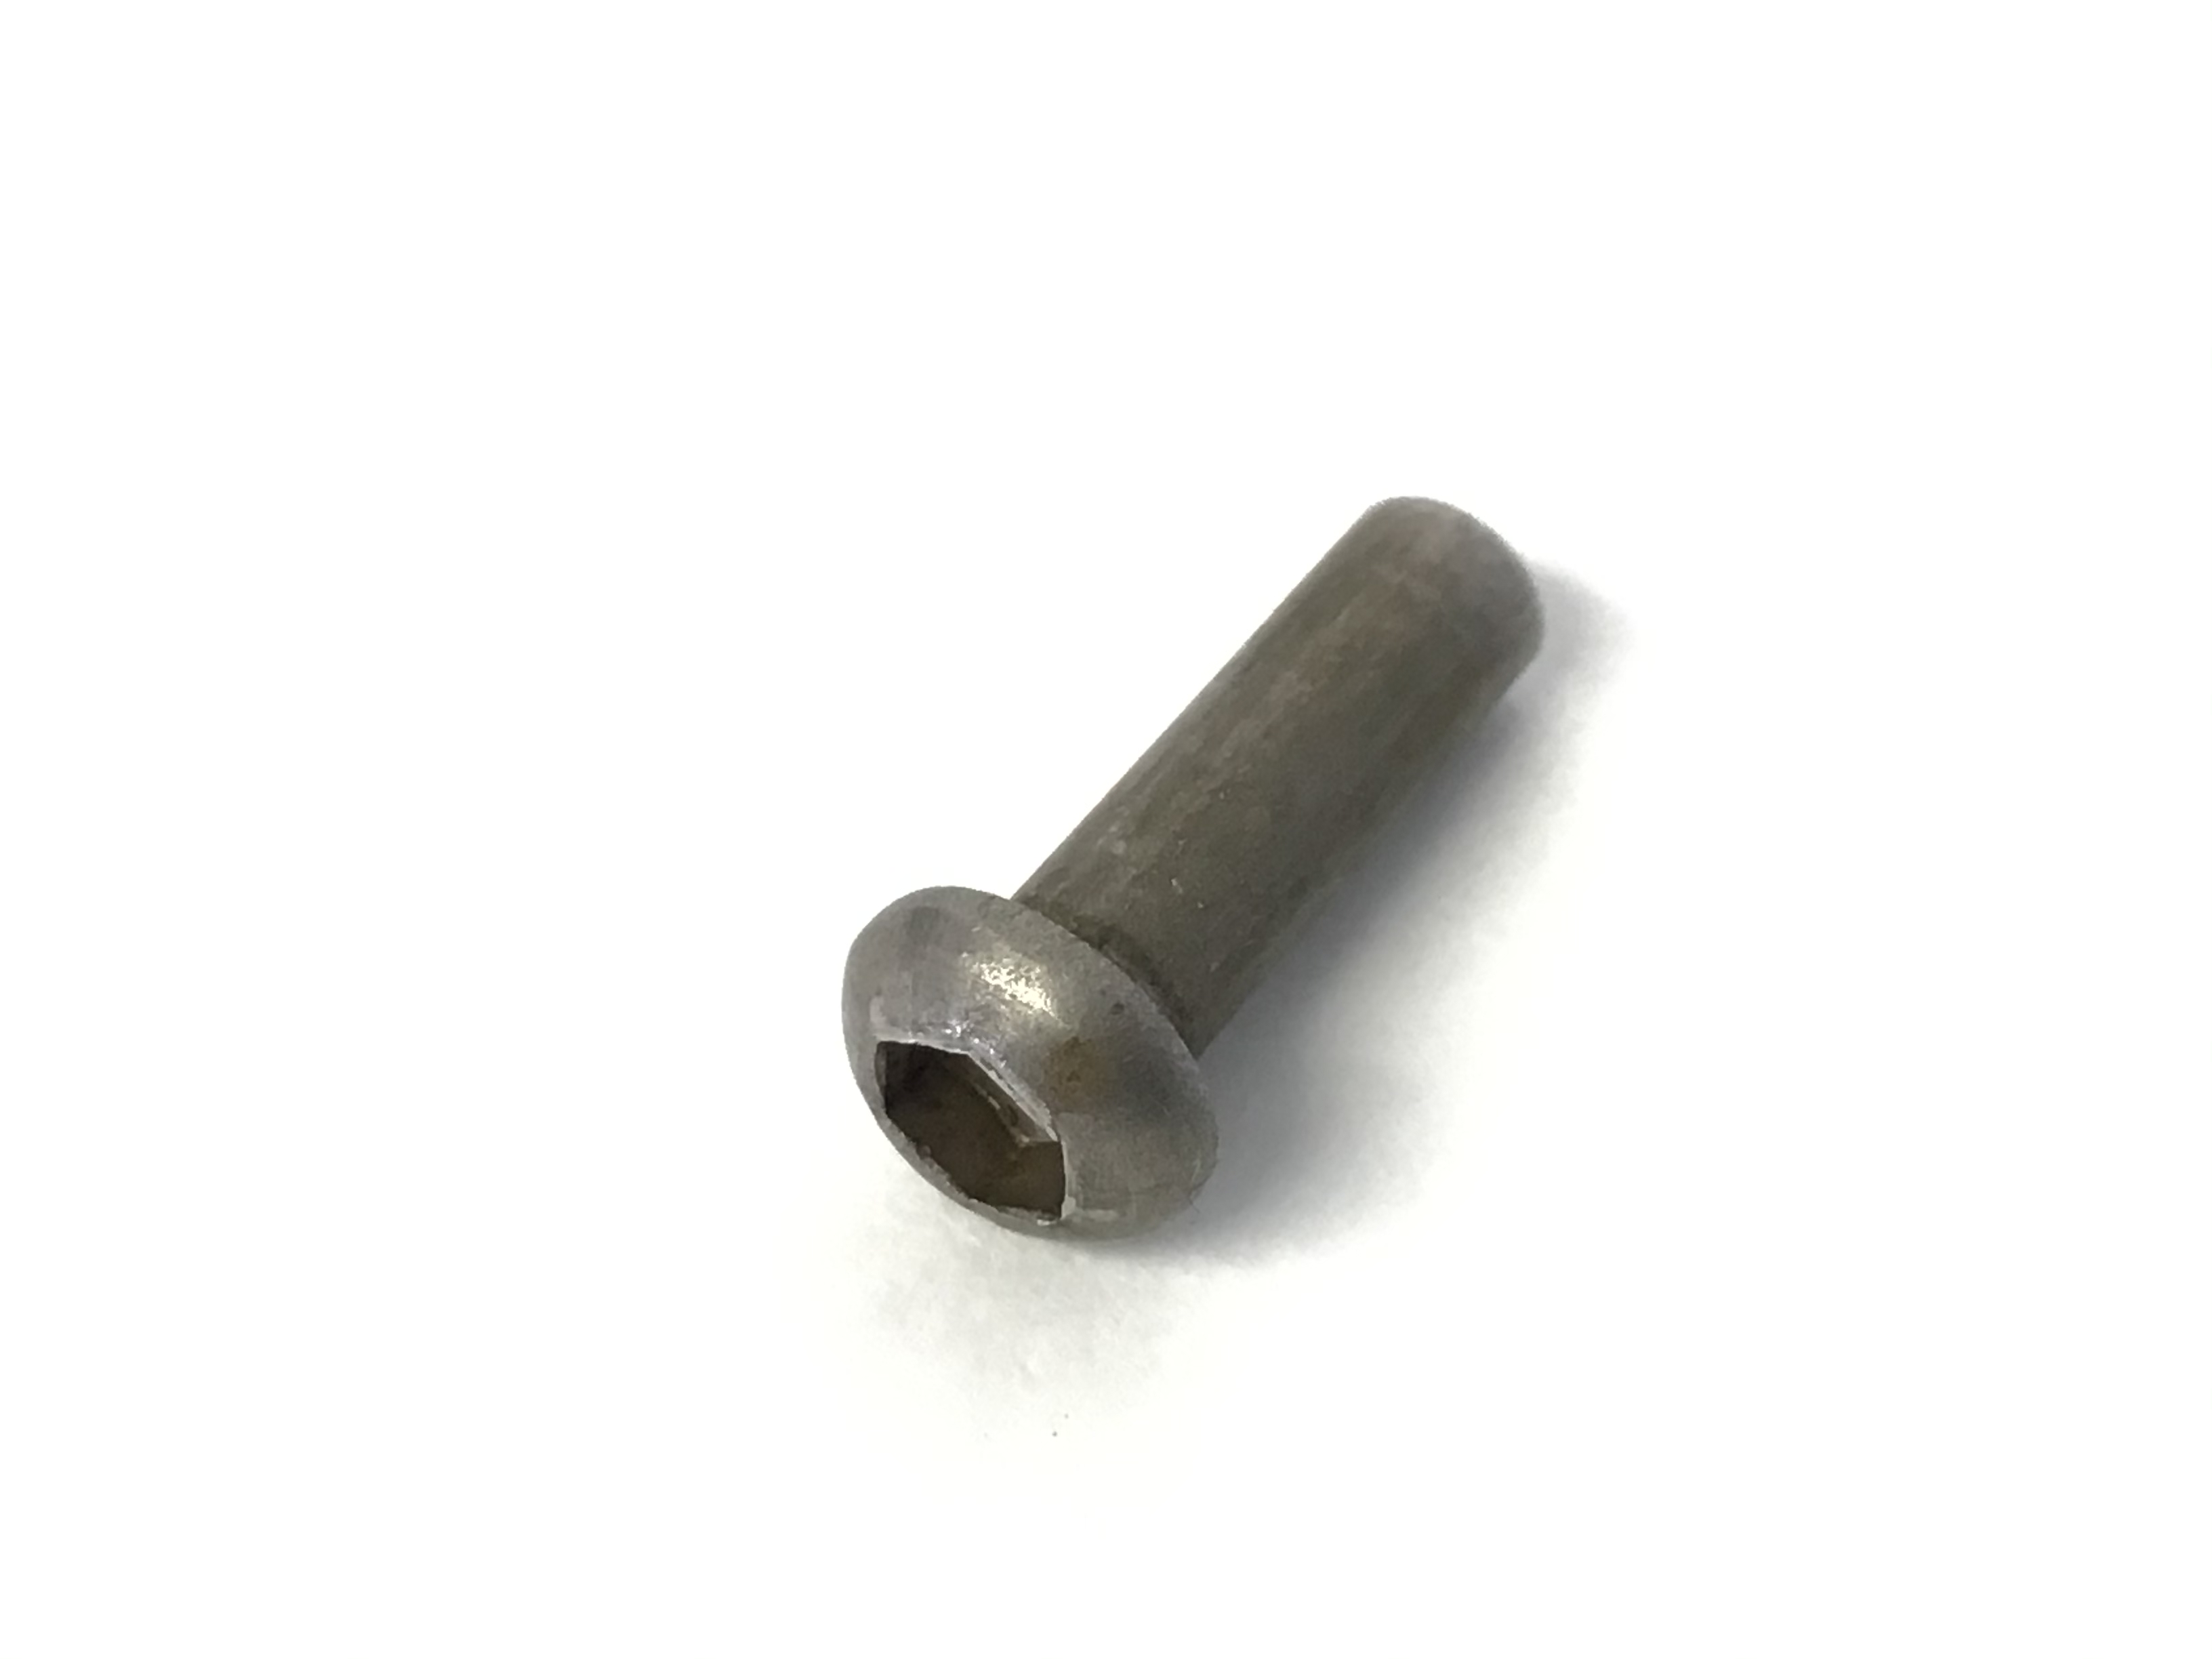 Button Head Female M4-.7 x 19mm Barrel Nut